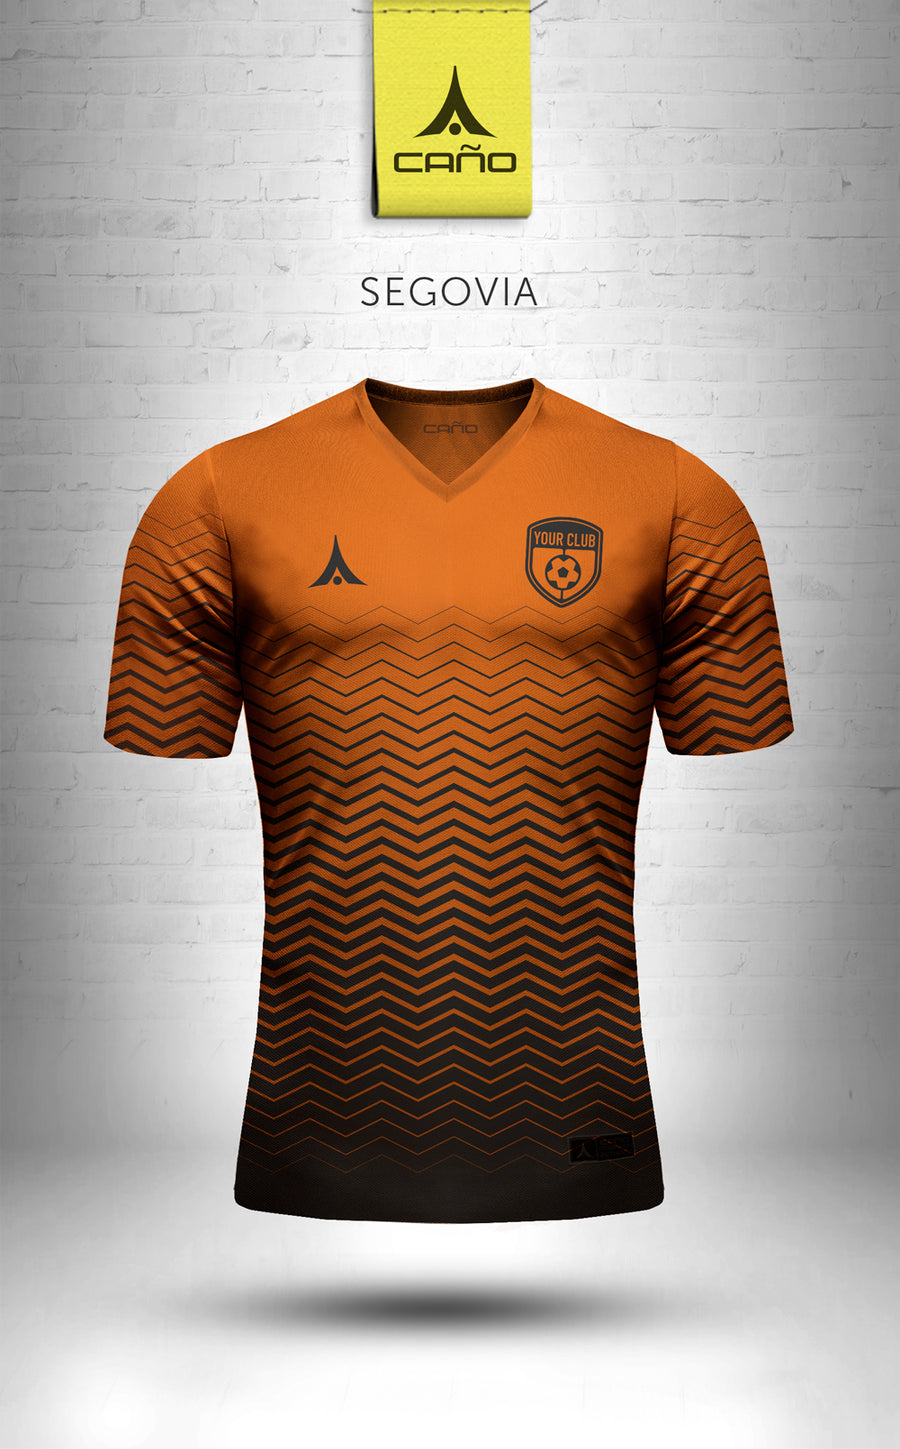 Segovia in orange/black